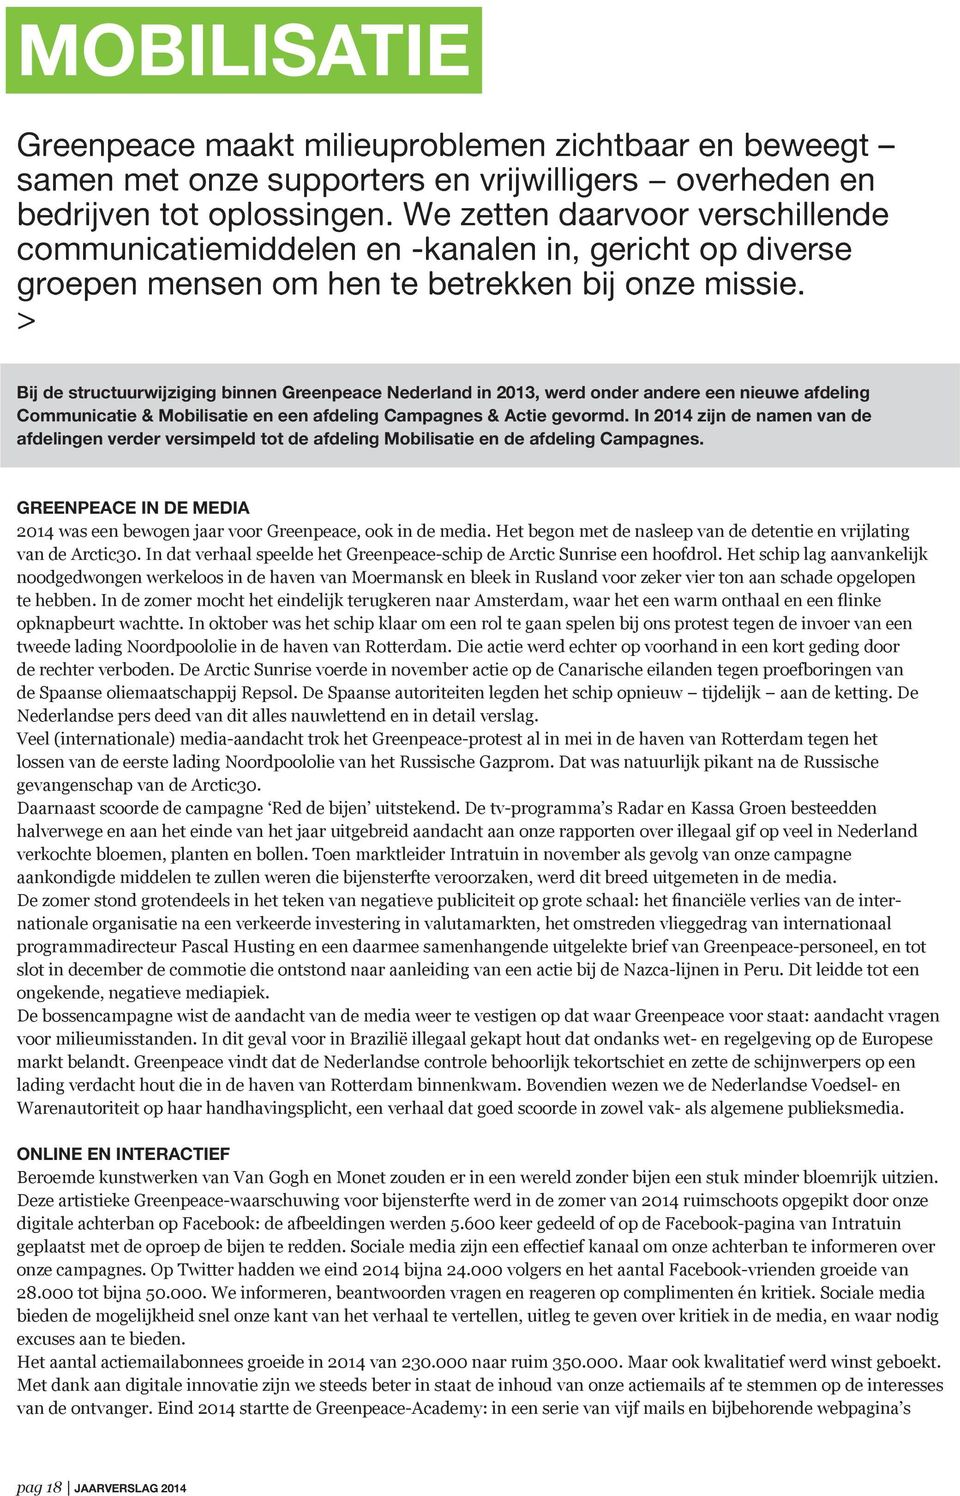 > Bij de structuurwijziging binnen Greenpeace Nederland in 2013, werd onder andere een nieuwe afdeling Communicatie & Mobilisatie en een afdeling Campagnes & Actie gevormd.